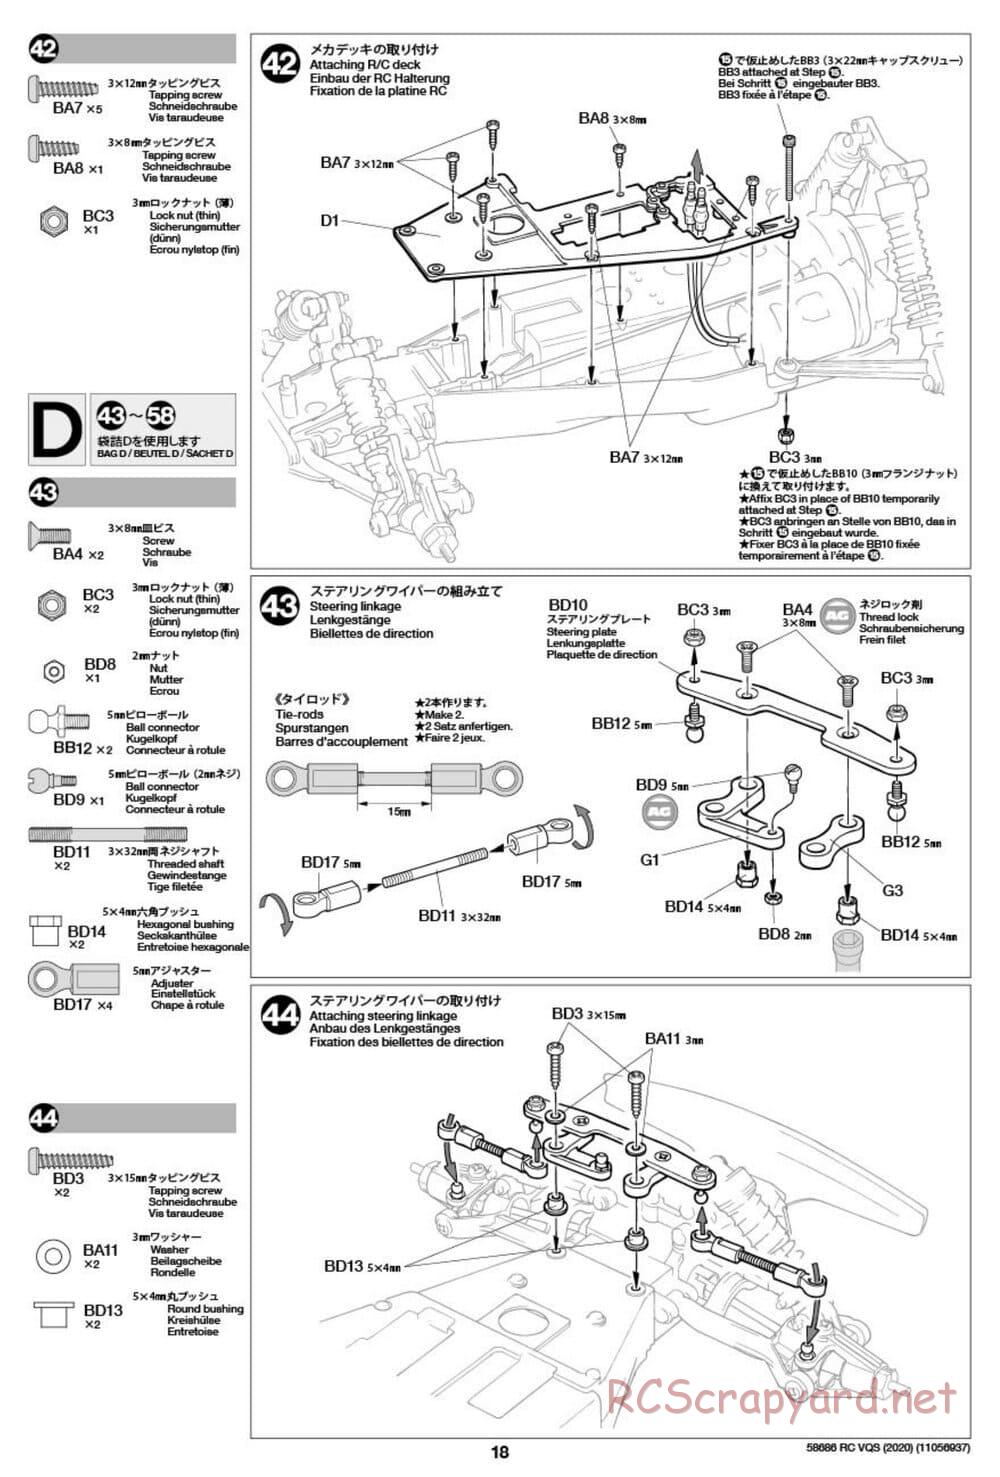 Tamiya - VQS (2020) - AV Chassis - Manual - Page 18